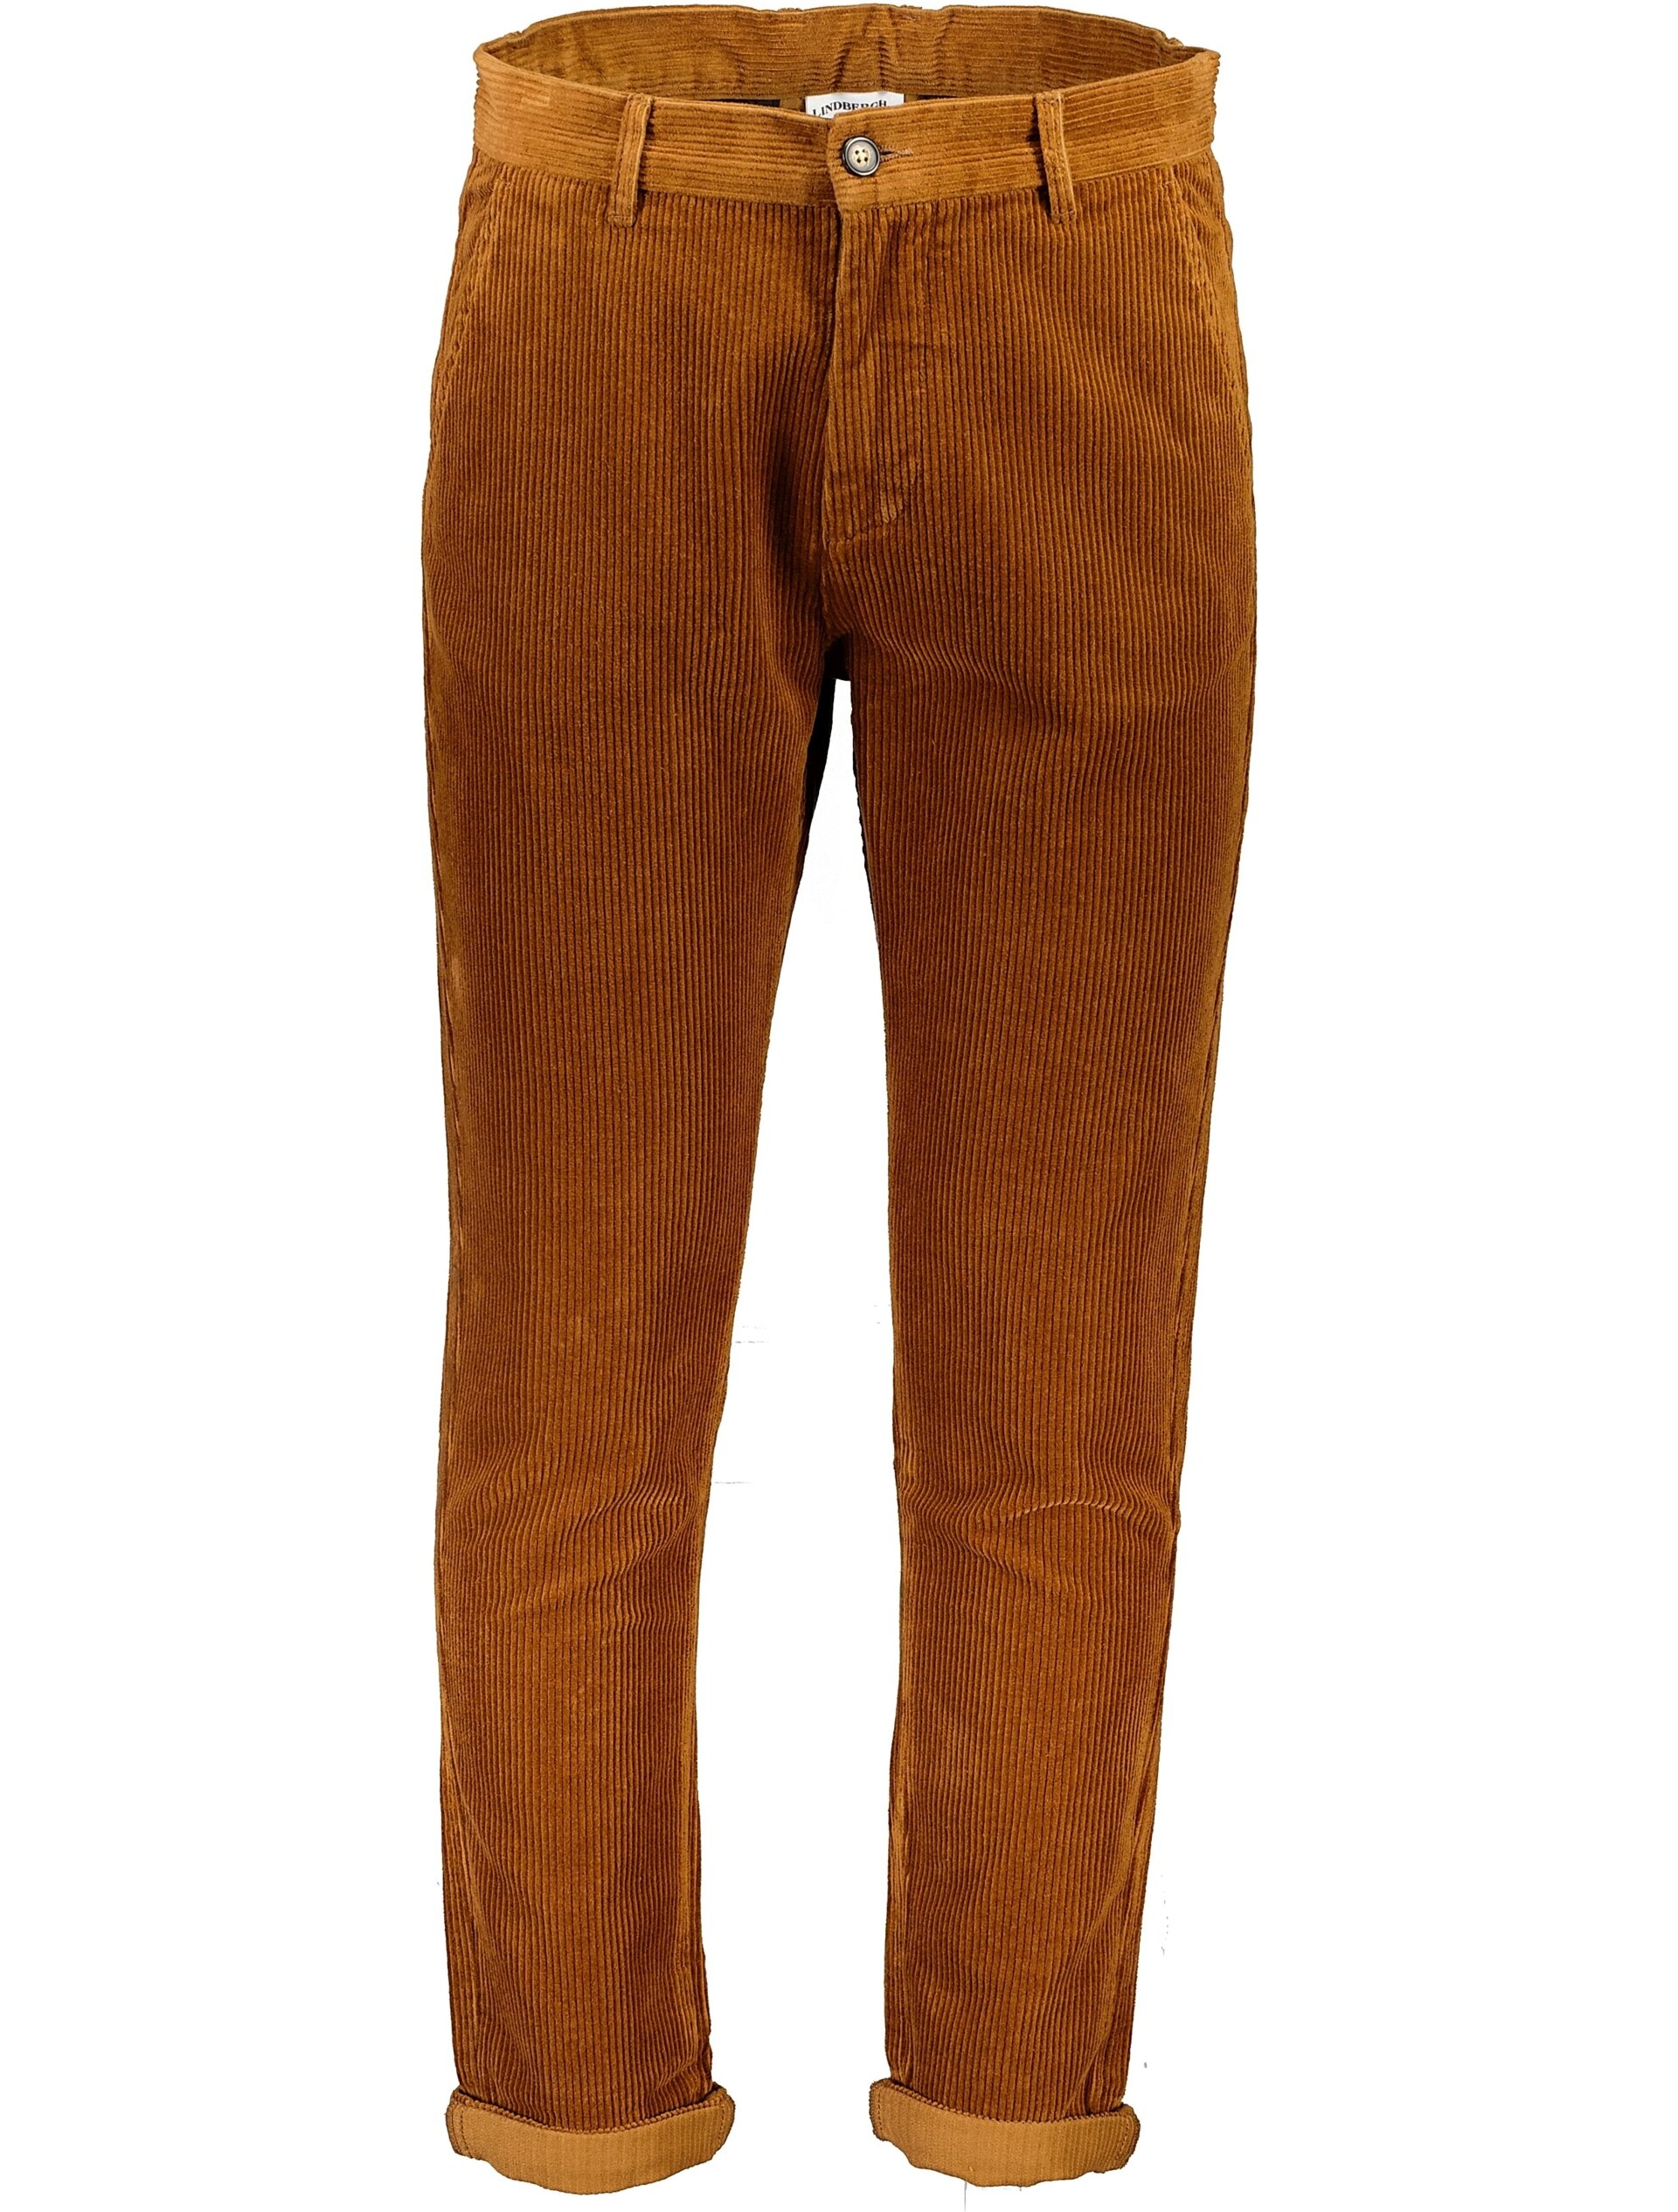 Lindbergh Corduroy trousers brown / dk brown 324